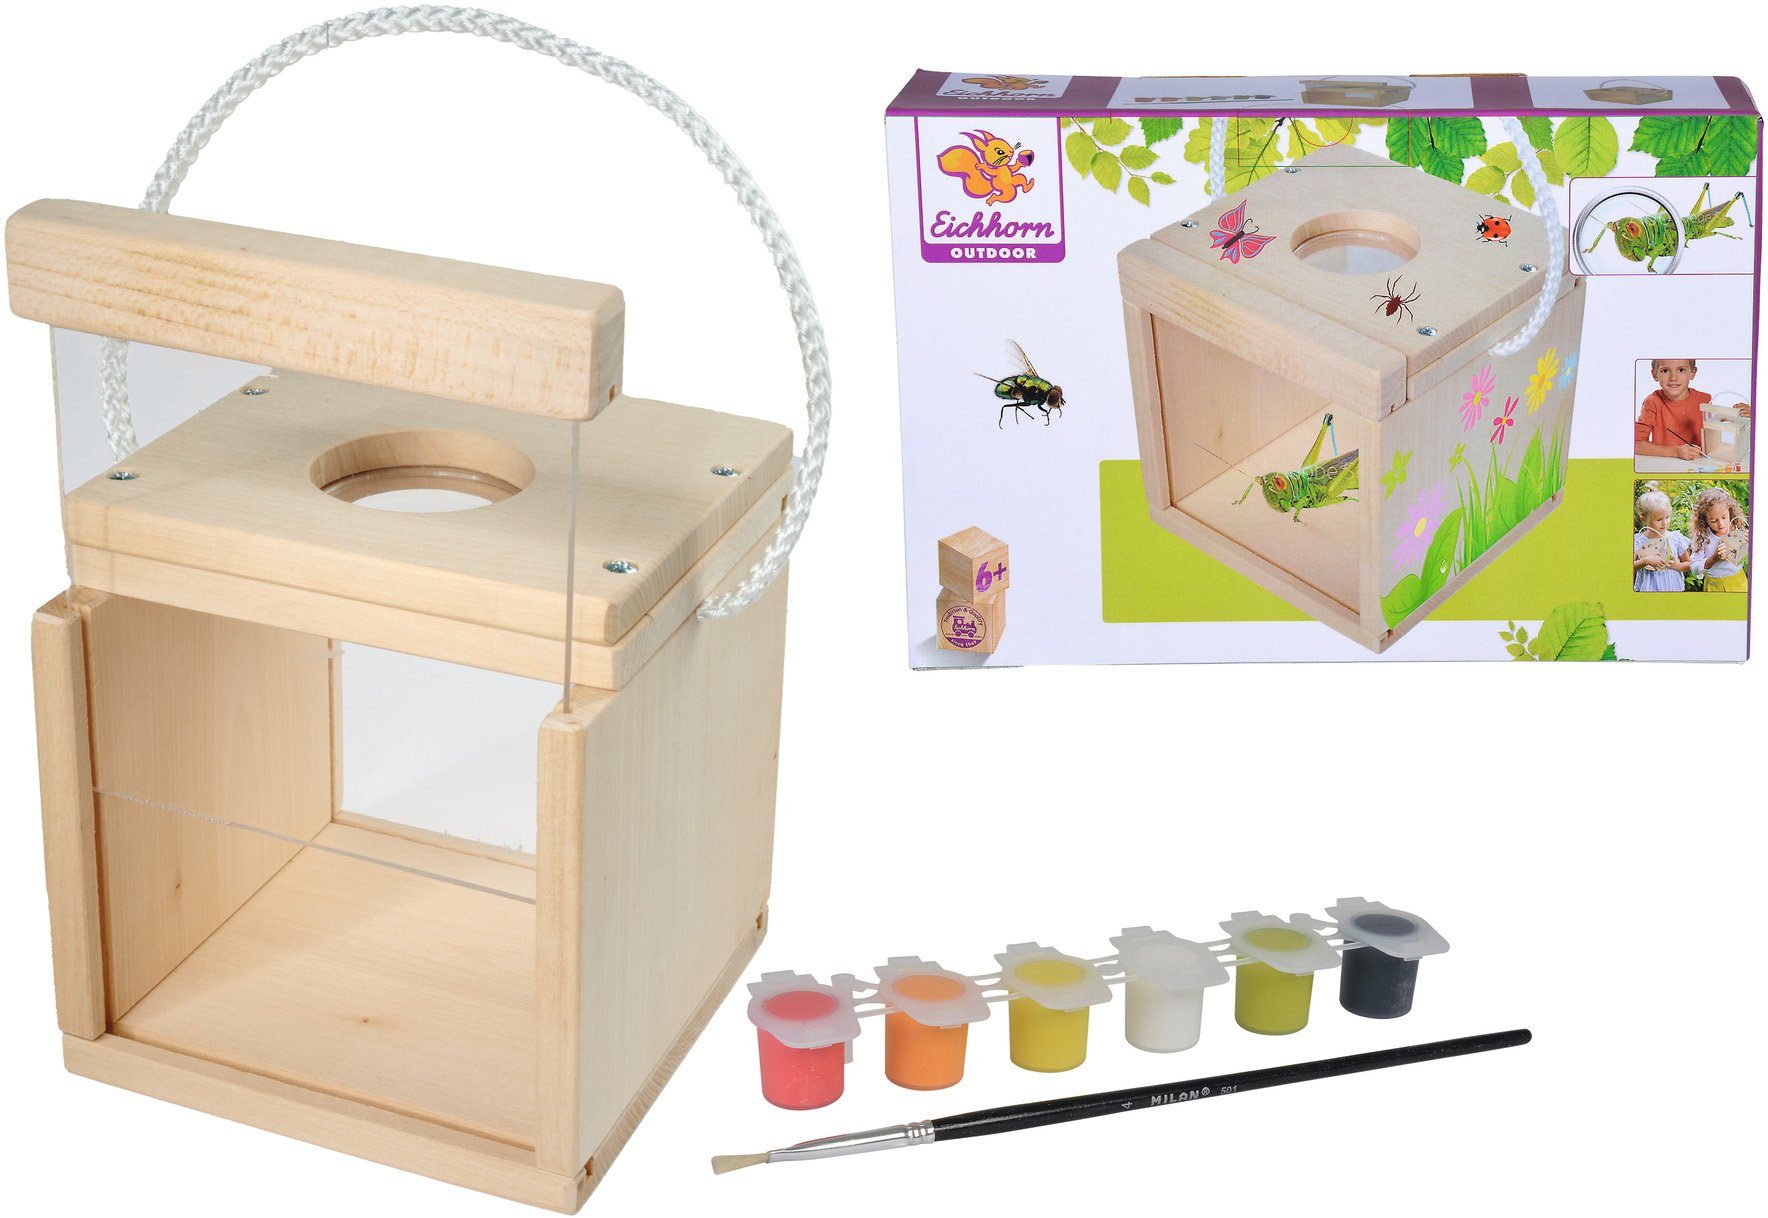 Eichhorn Kreativset Holzspielzeug, Outdoor Insekten Beobachtung, Zum Zusammenbauen und Bemalen; Made in Europe